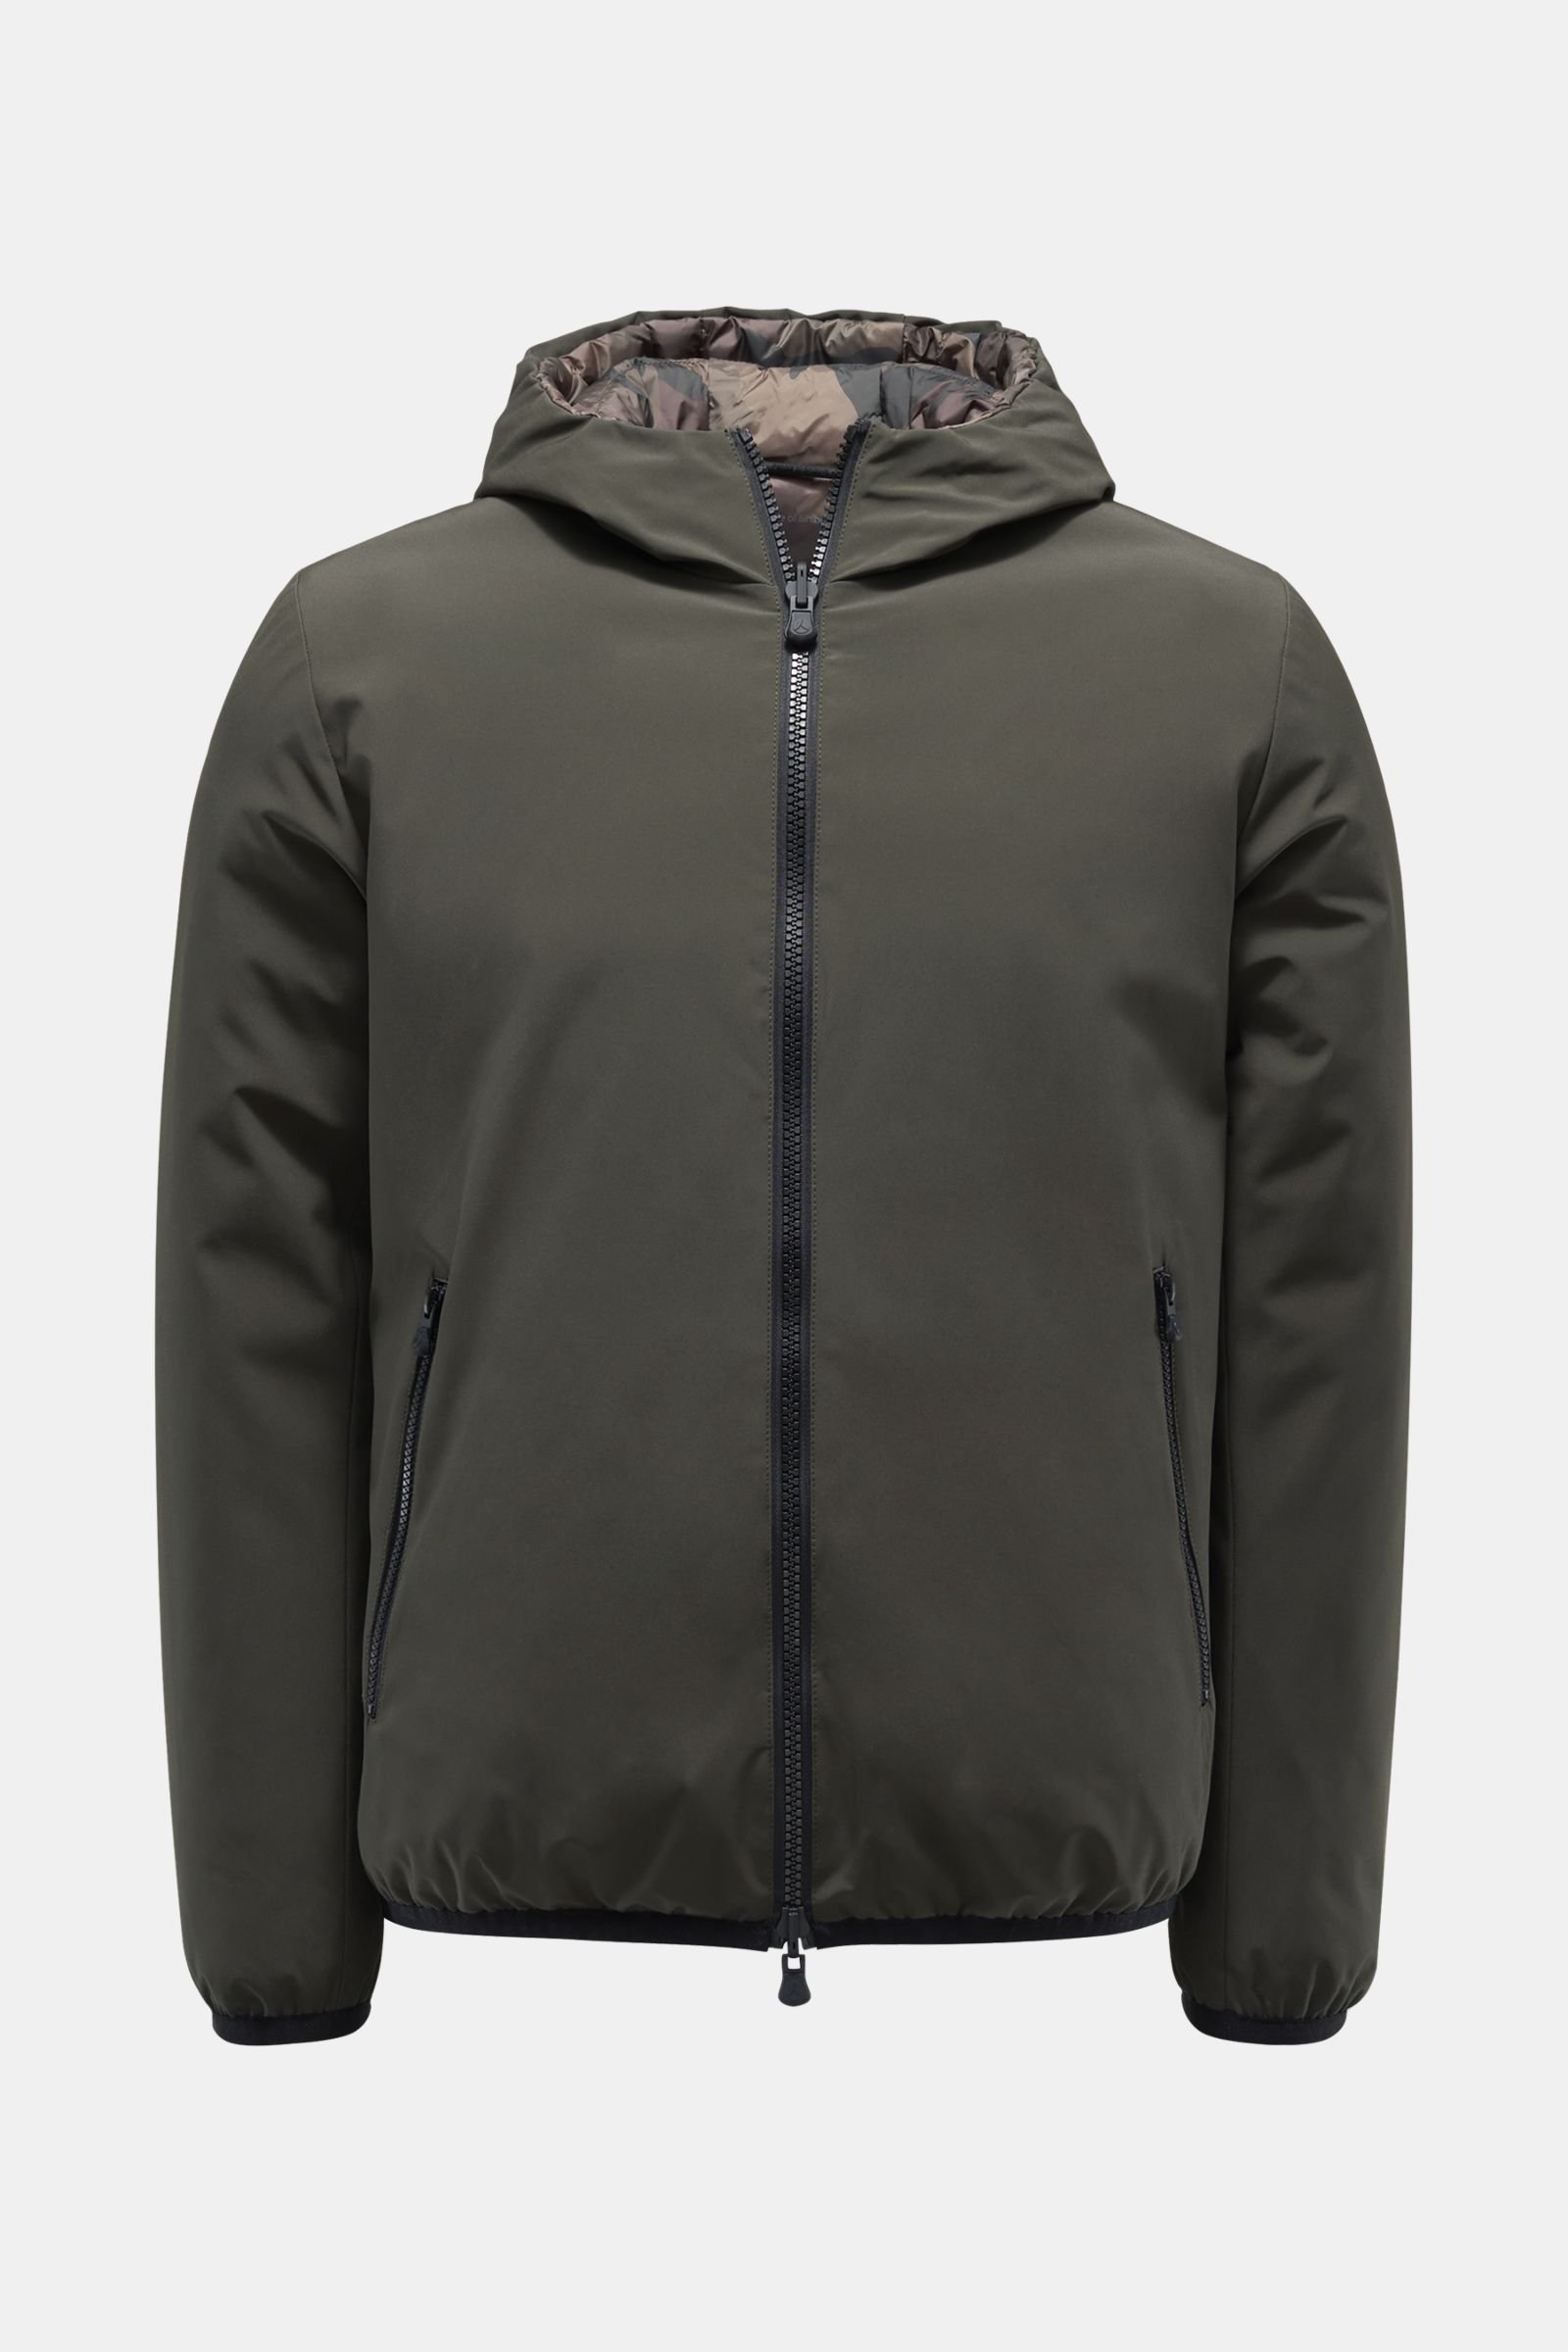 Reversible jacket 'Toshiro' olive/dark olive patterned